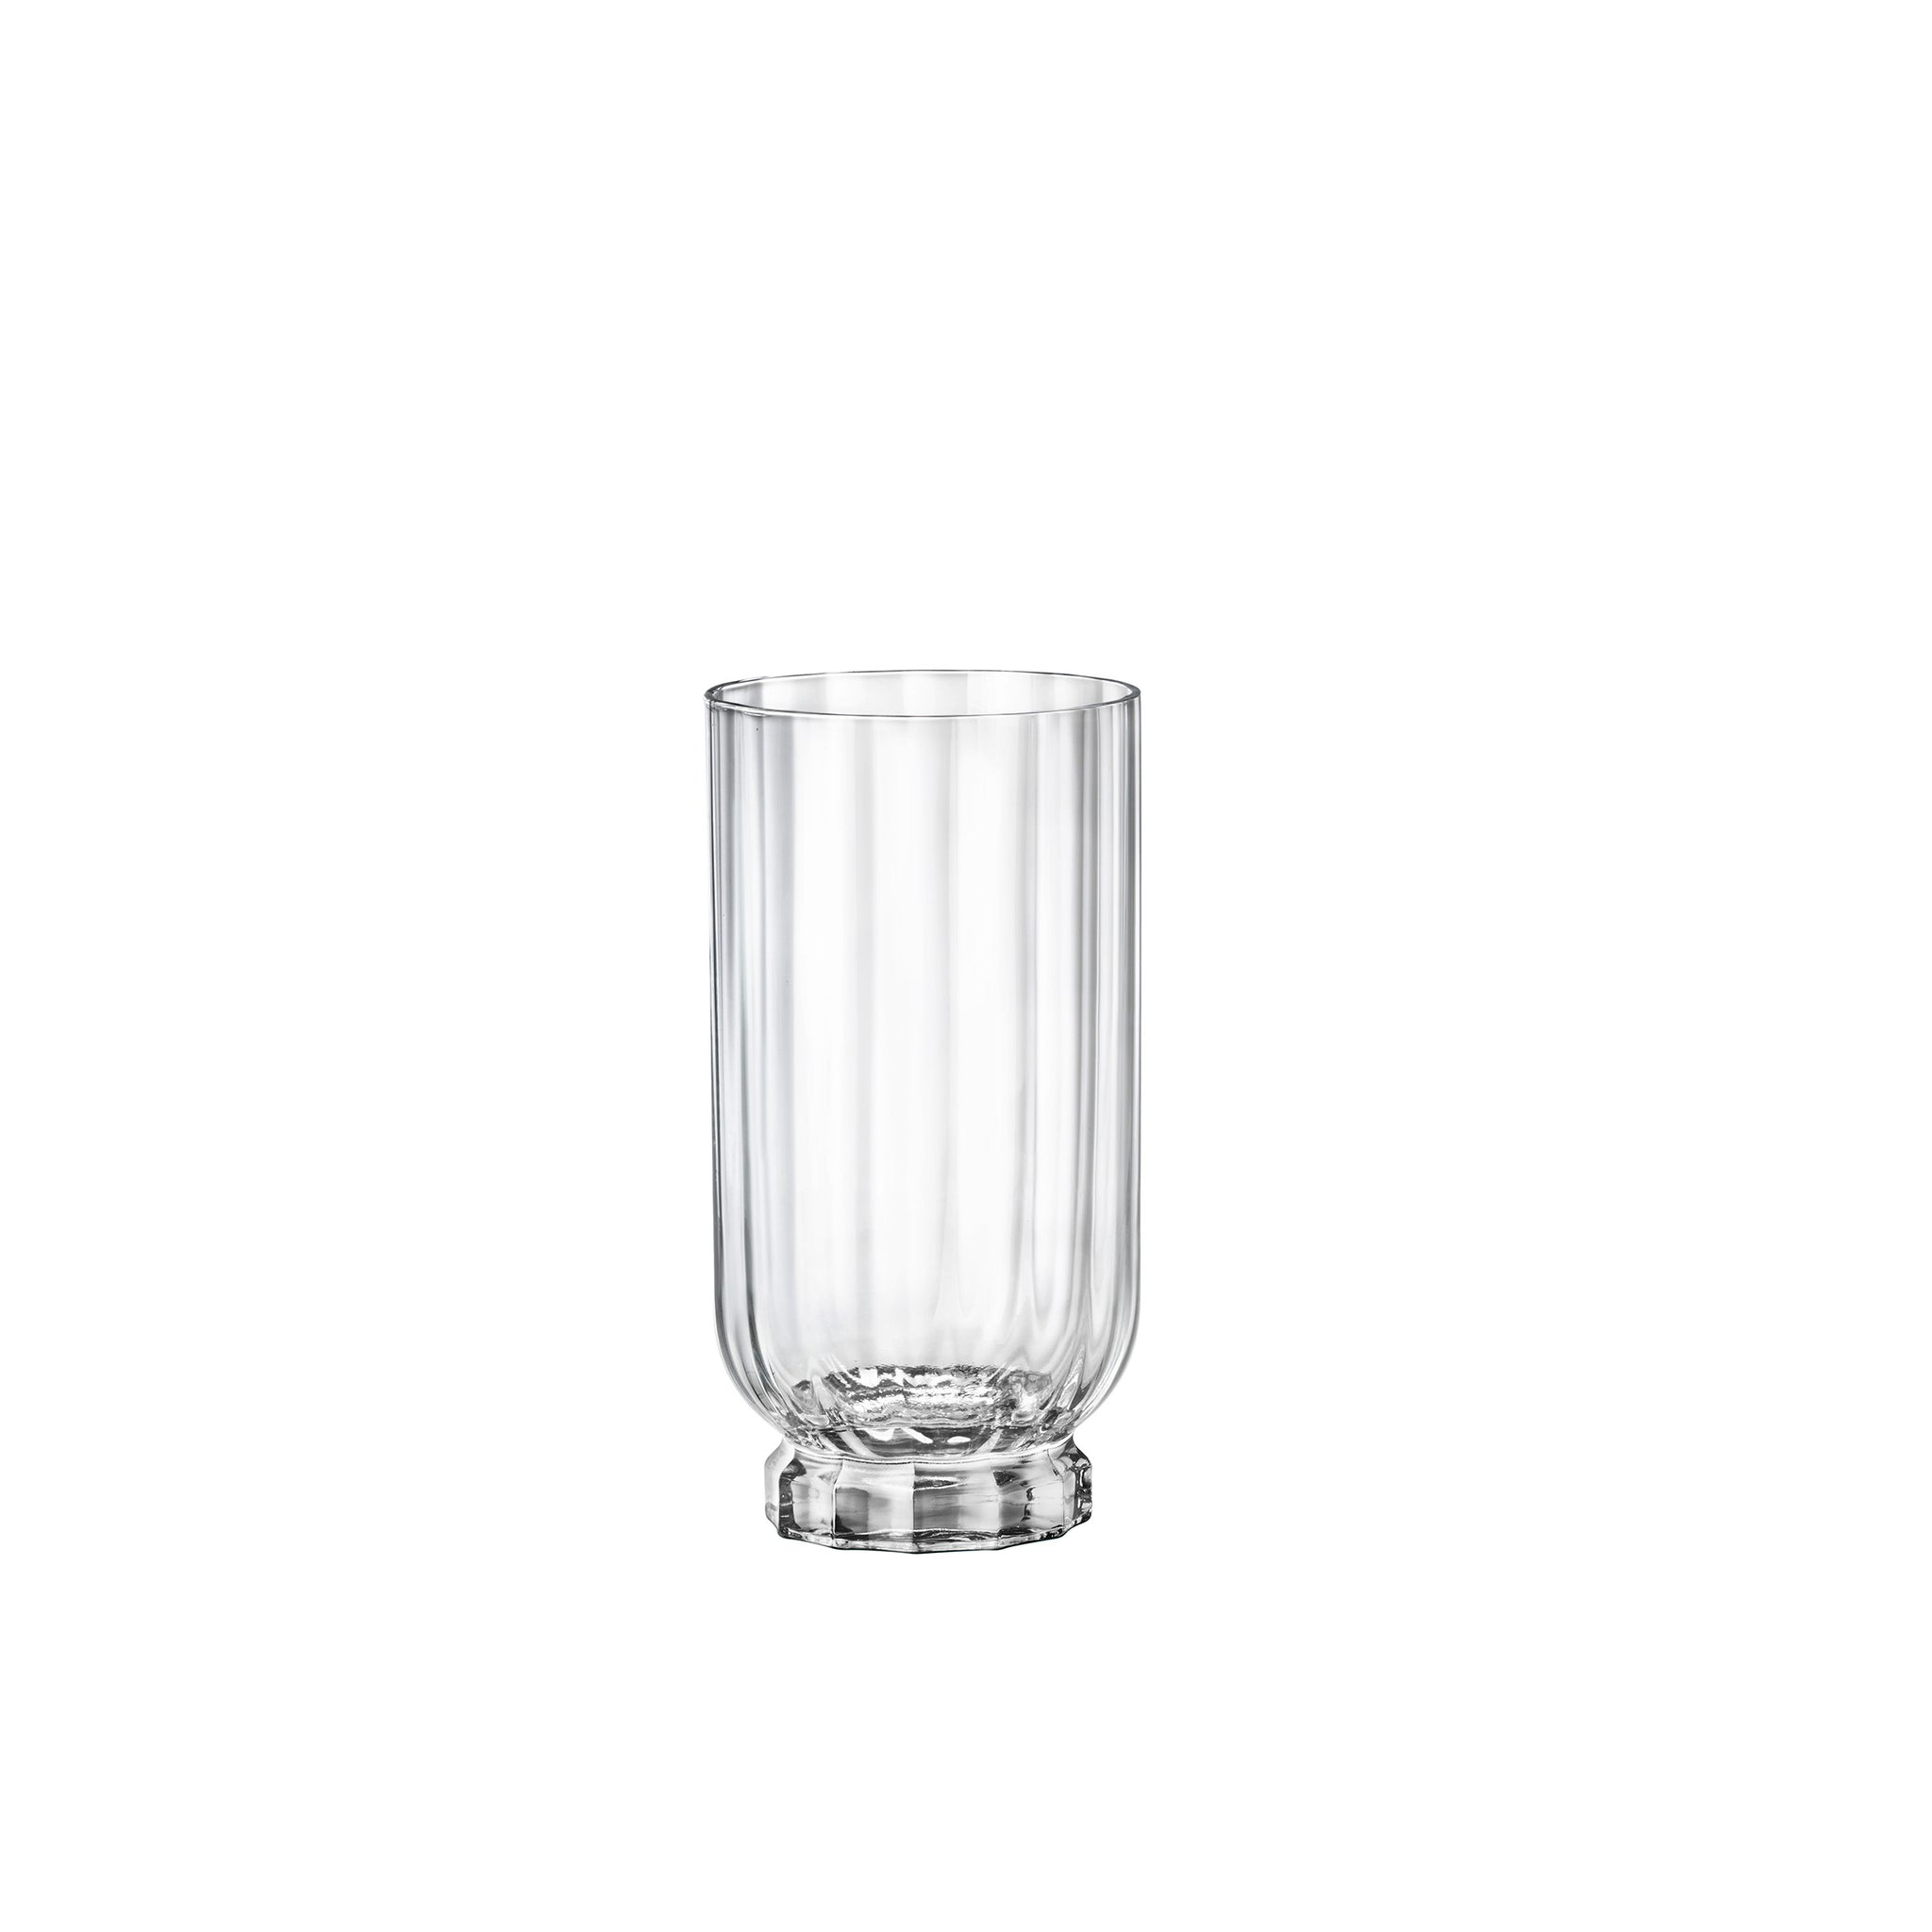 Florian 14.5 oz. Beverage Drinking Glasses (Set of 4)